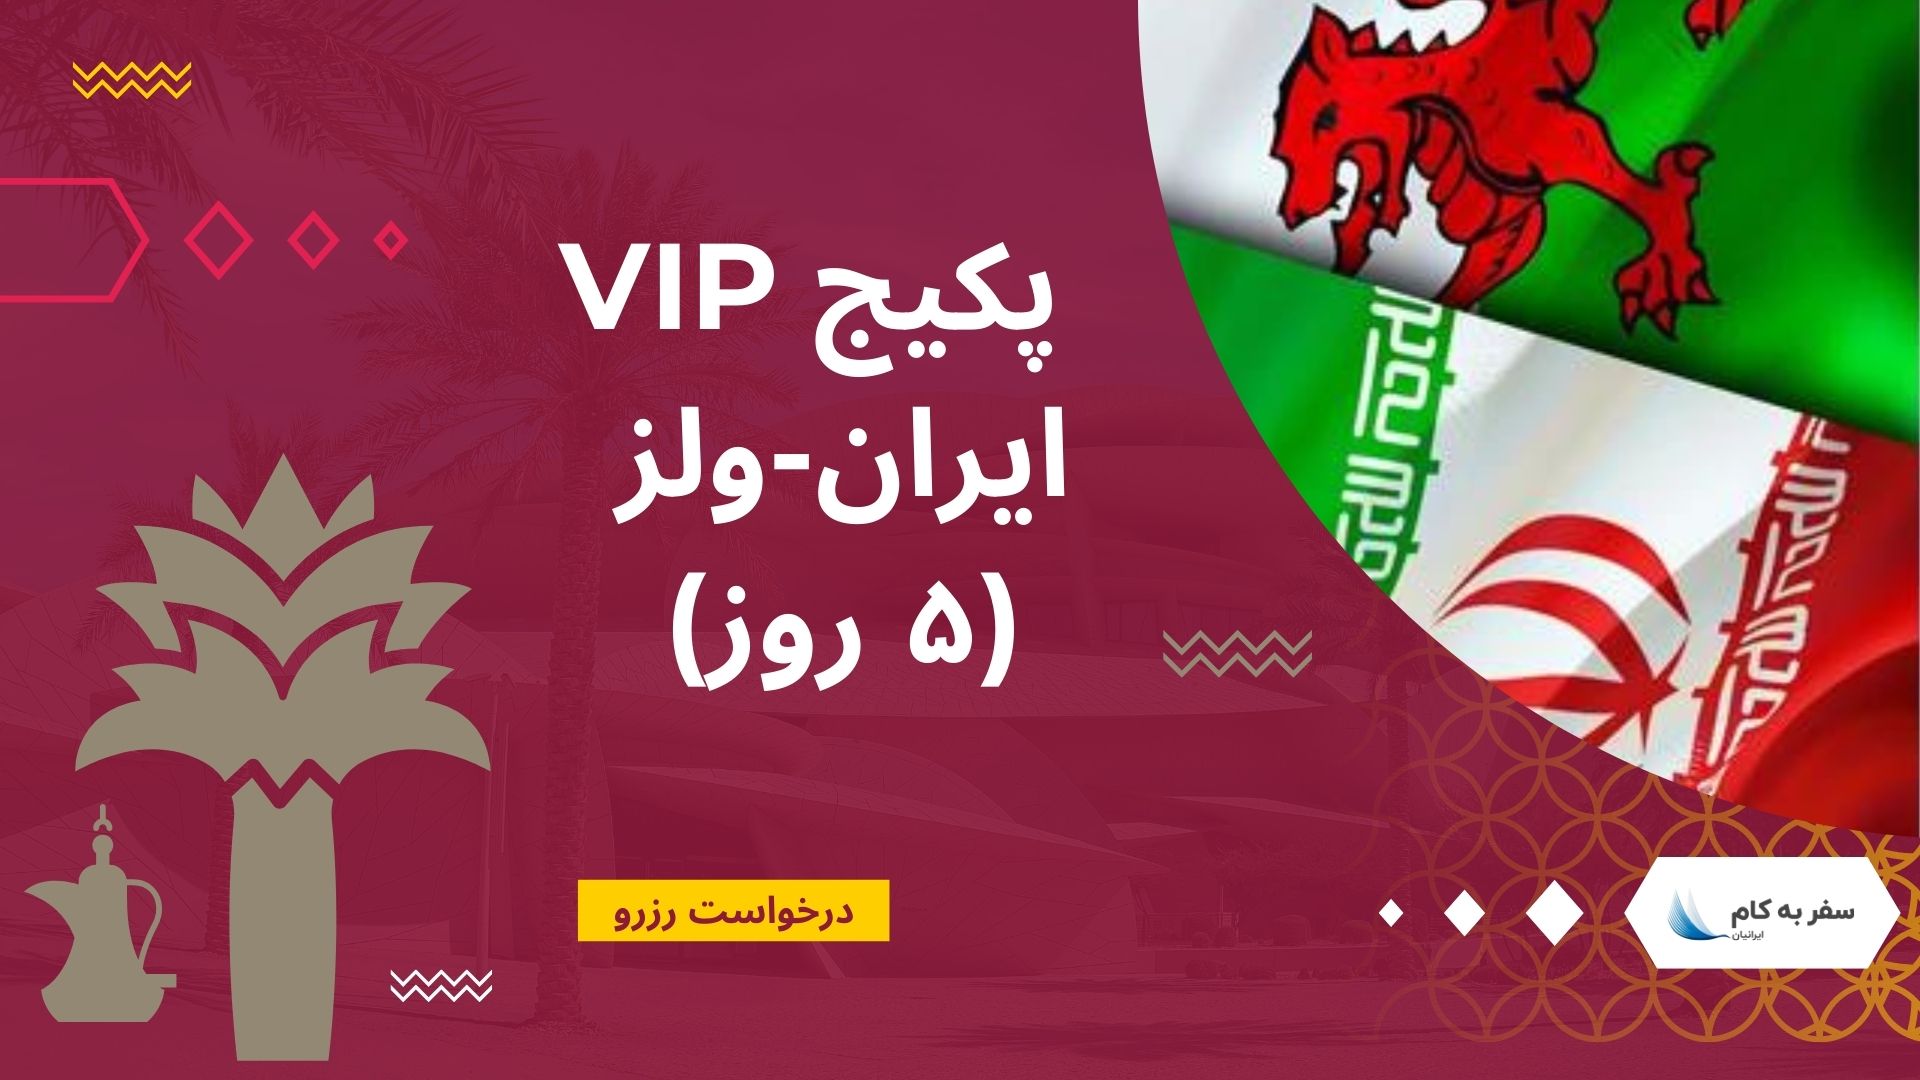 پکیج VIP ایران – ولز (۵ روز) – جام جهانی قطر 2022